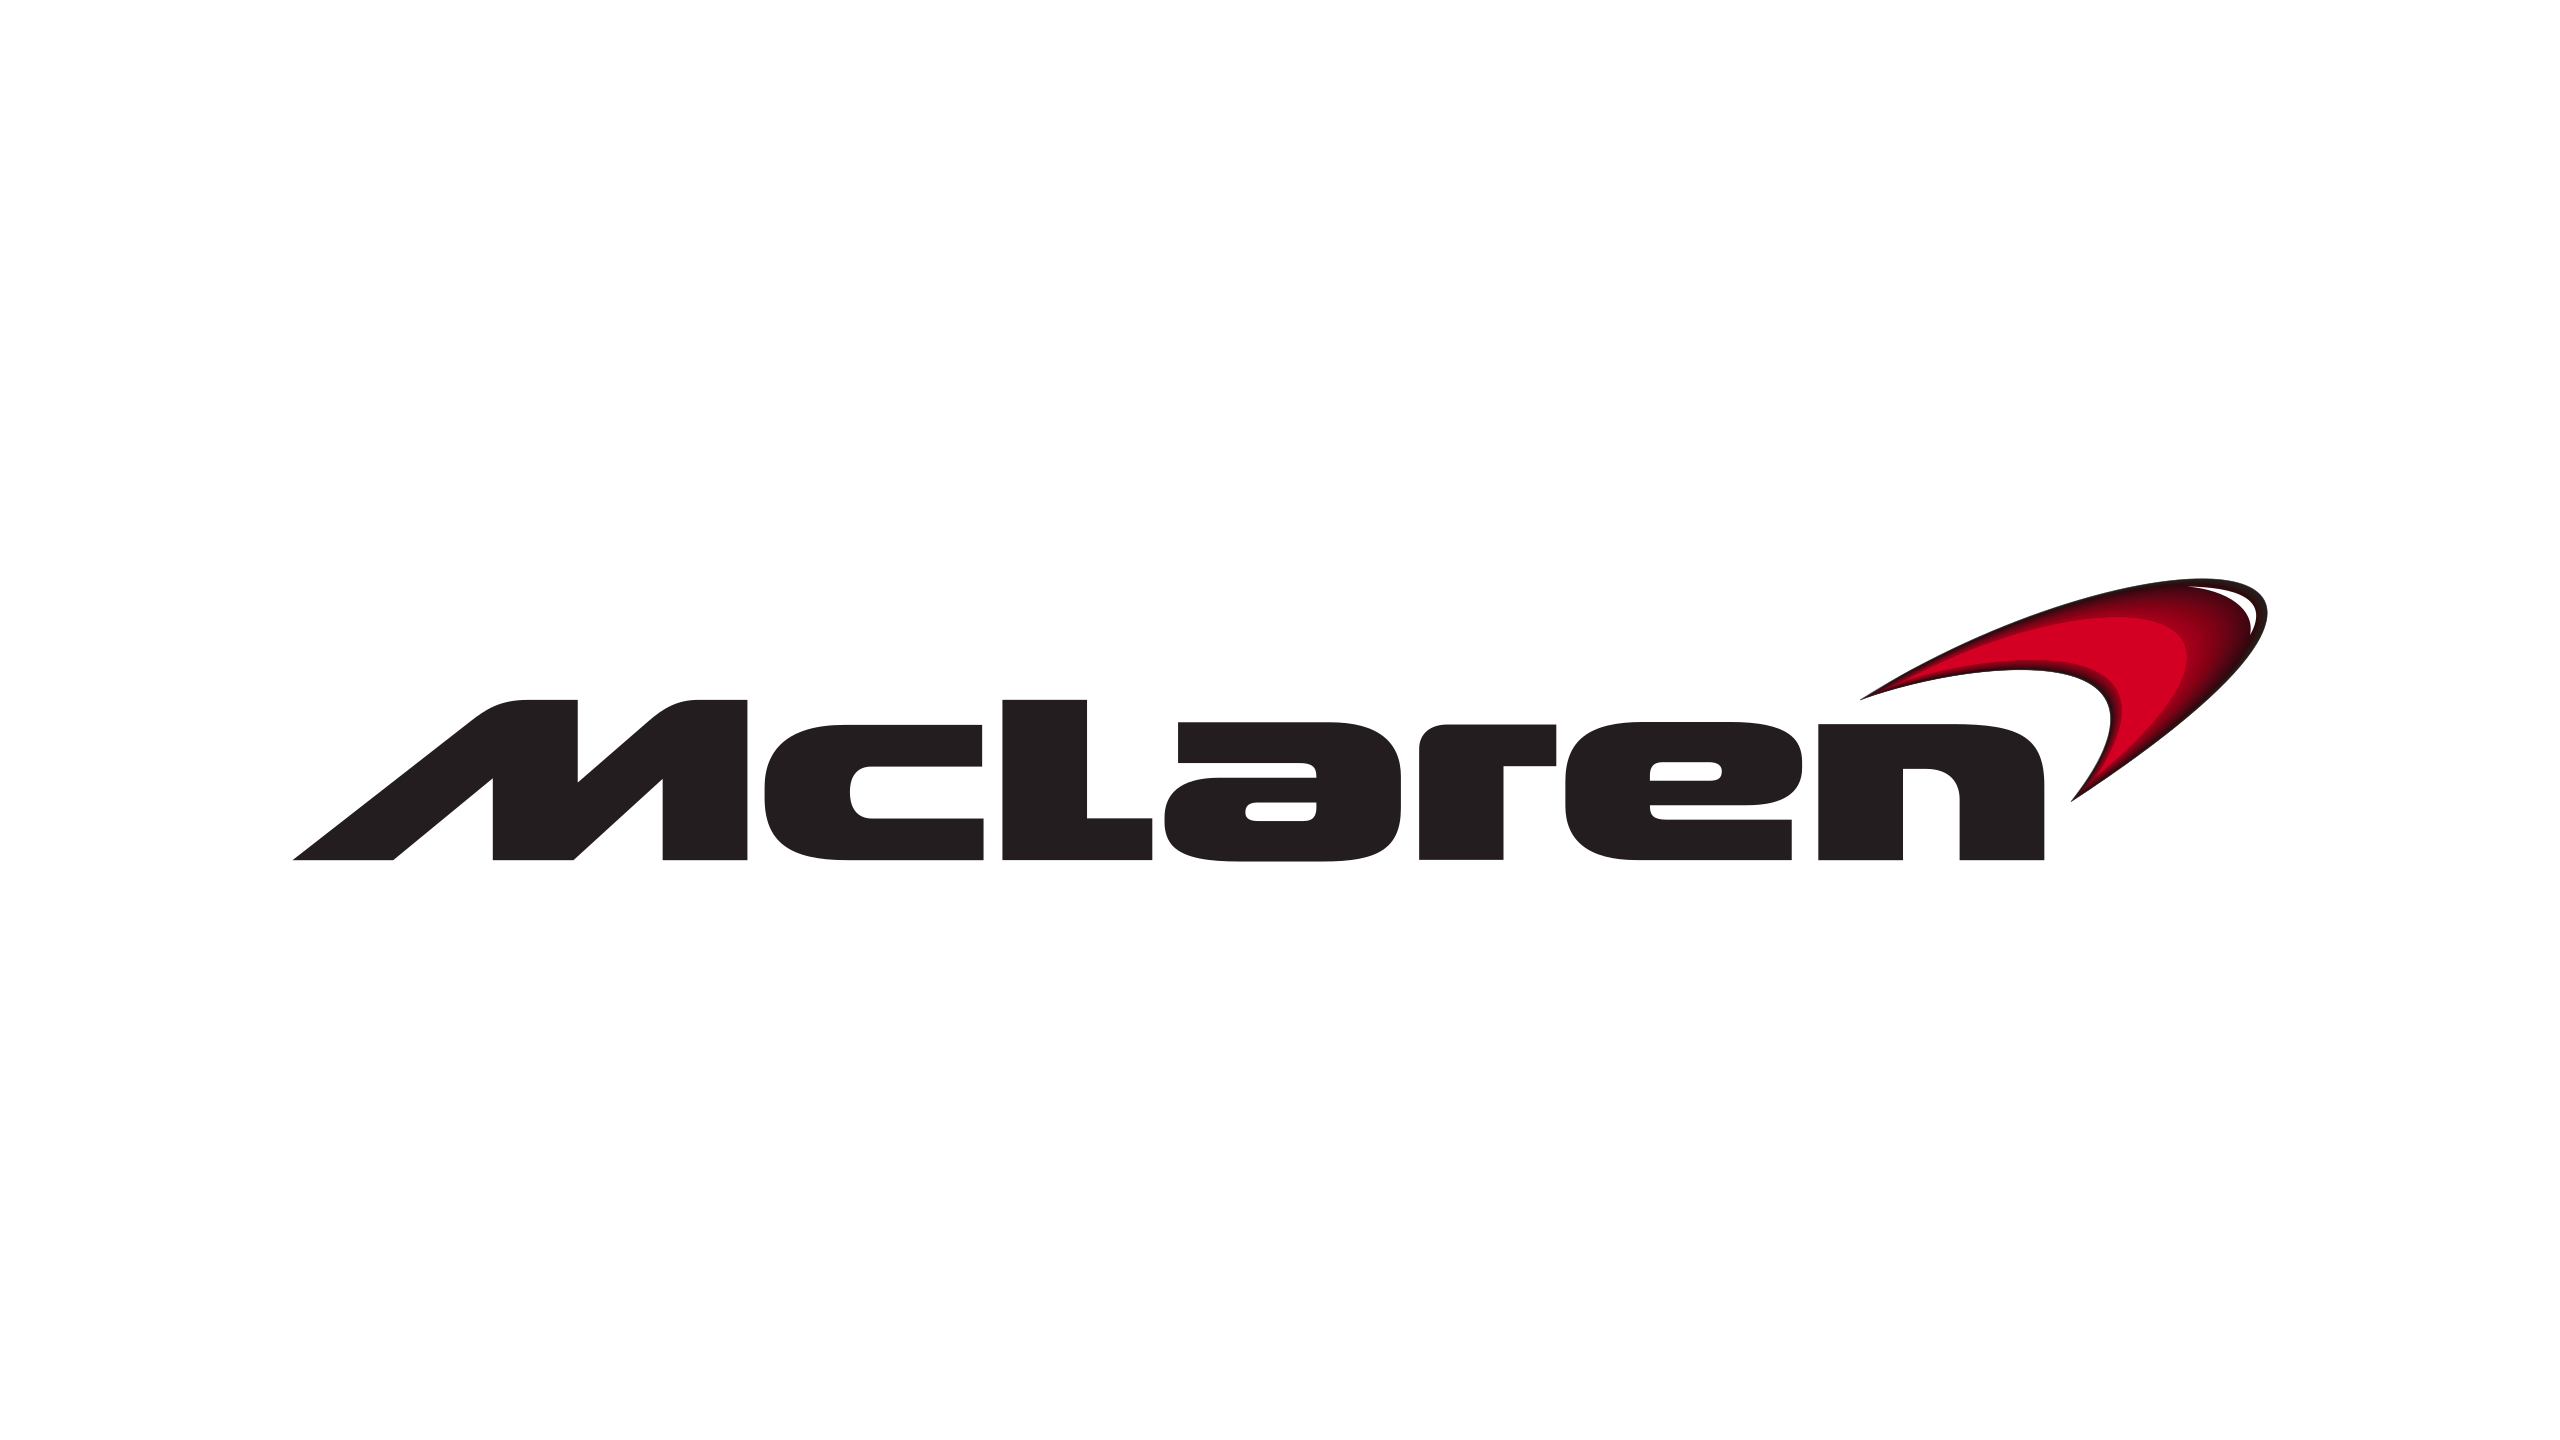 McLaren-logo-2002-2560x1440.png